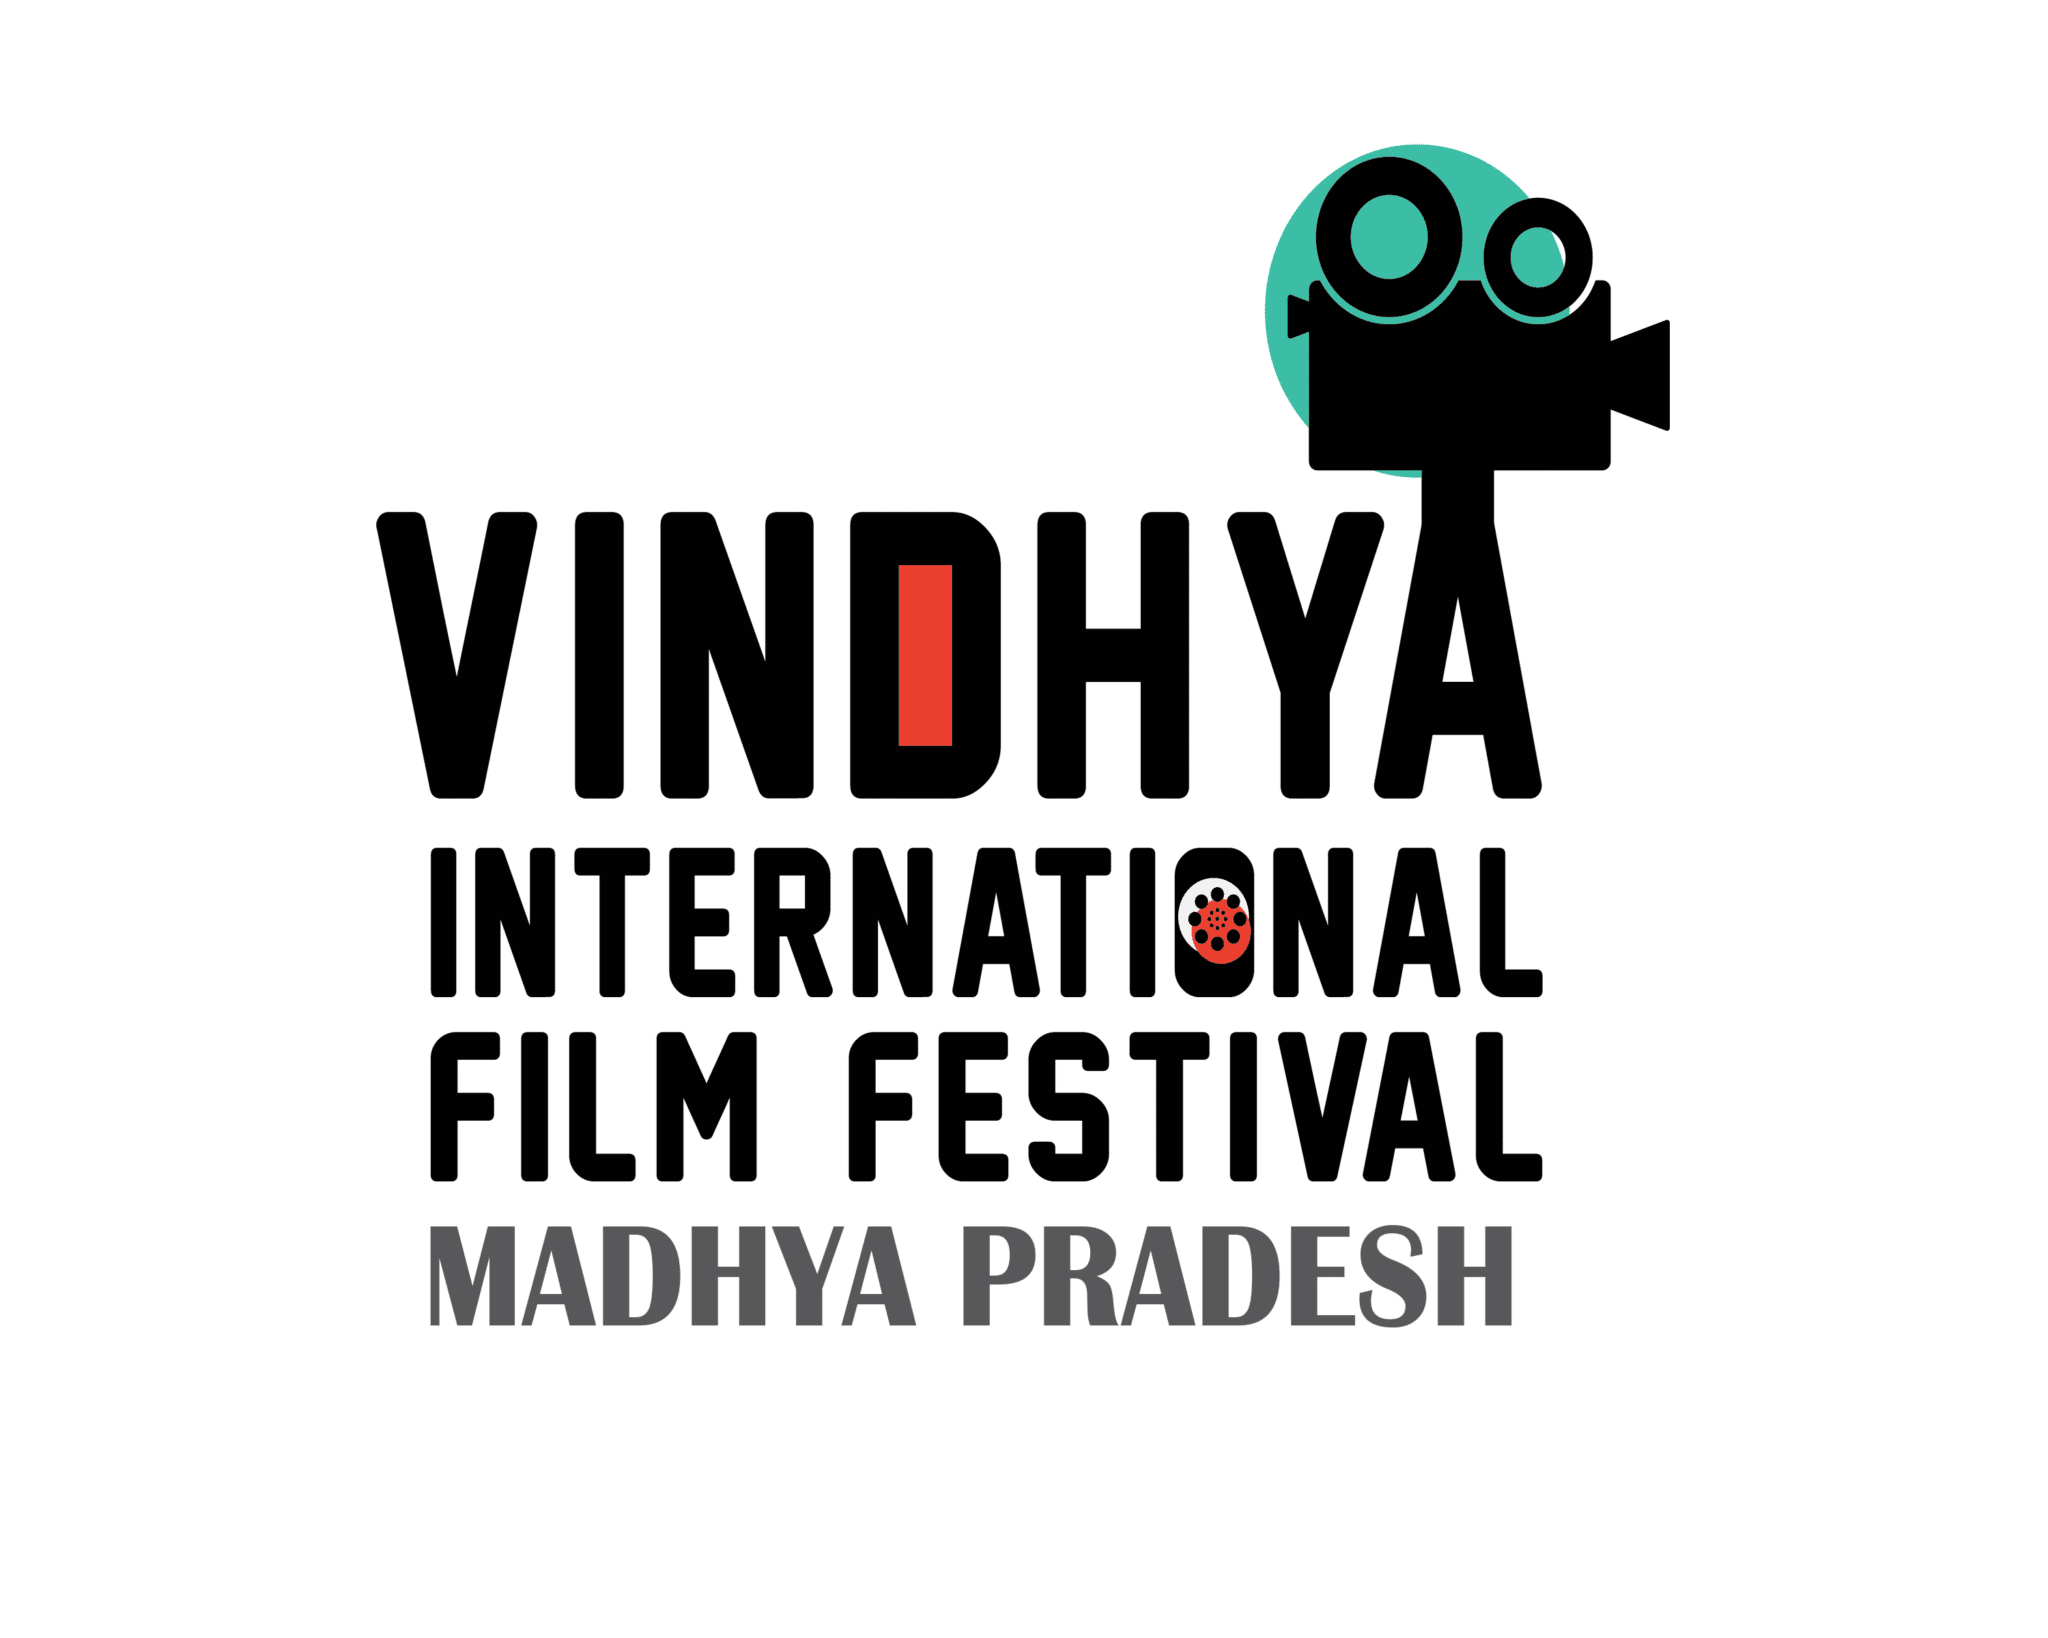 Vindhya International Film Festival Madhya Pradesh logo